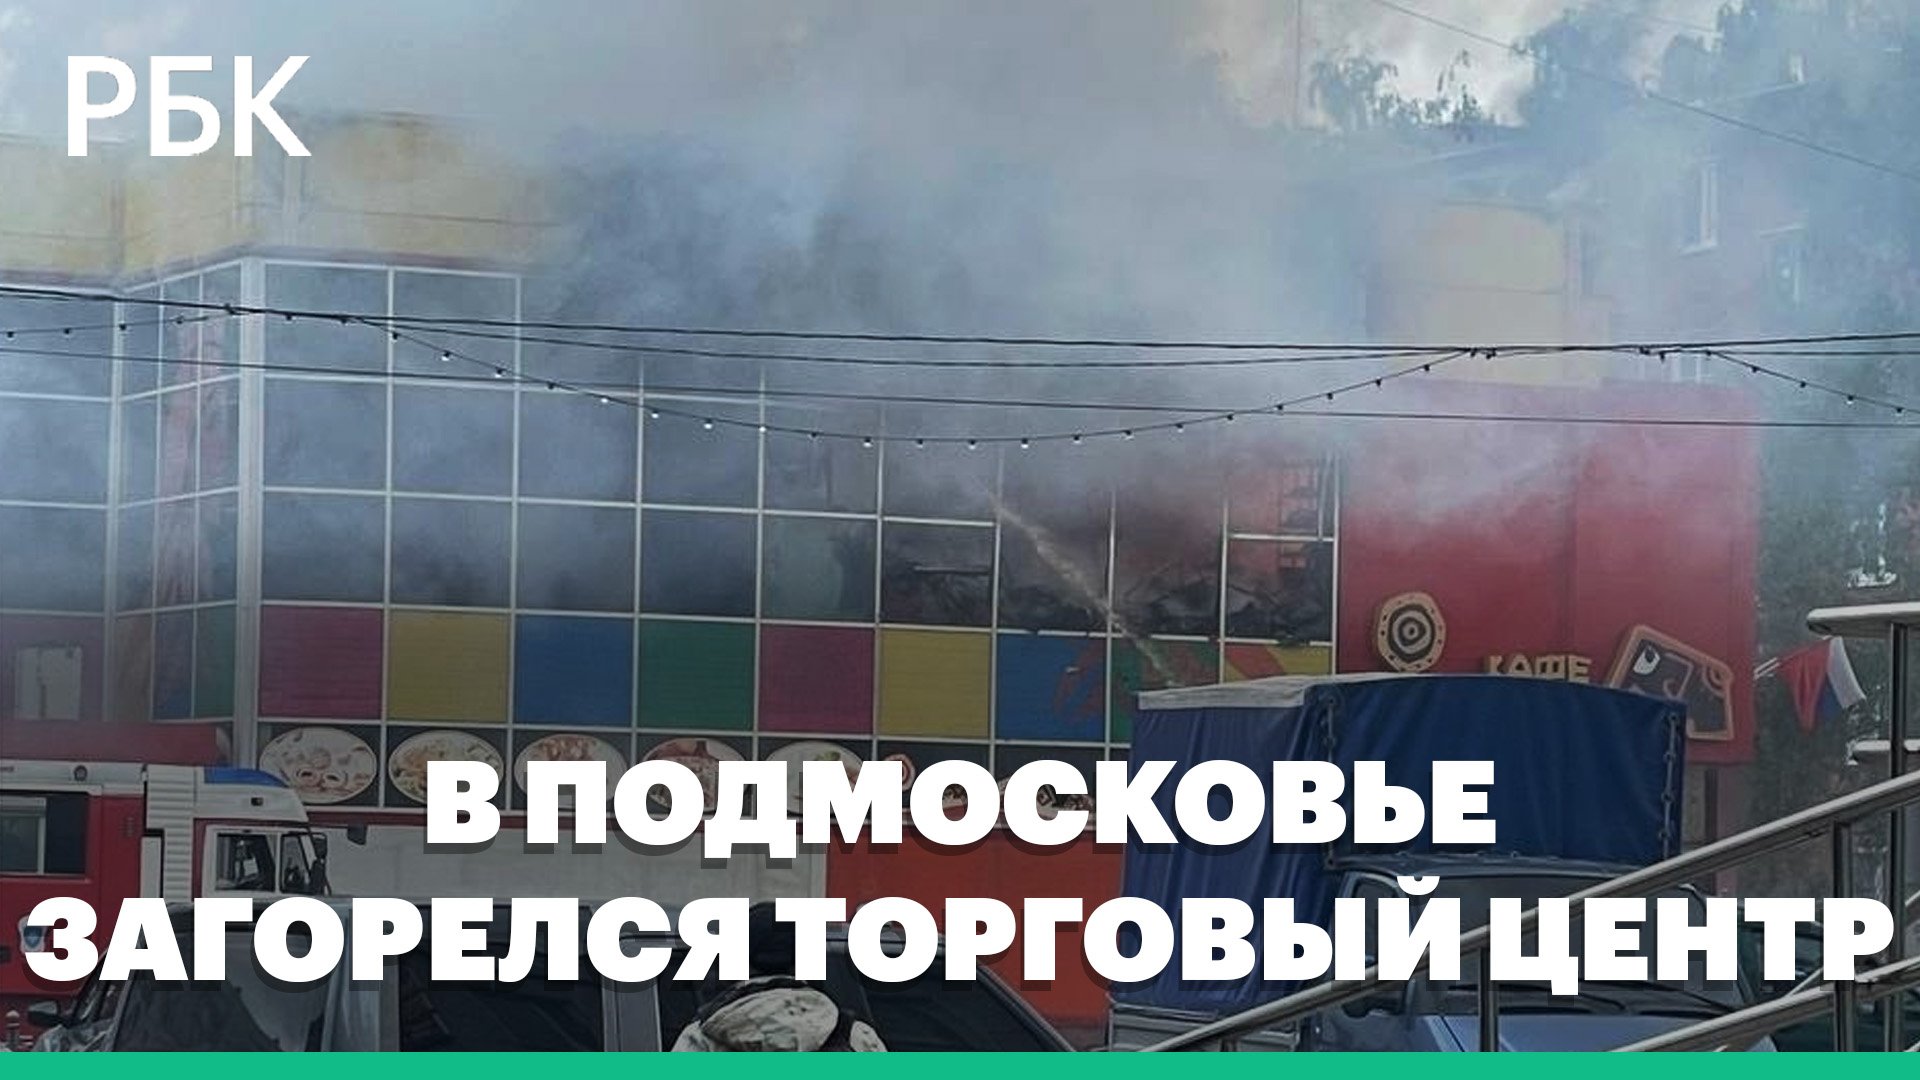 МЧС: в подмосковном Орехово-Зуево загорелся торговый центр «Феникс»